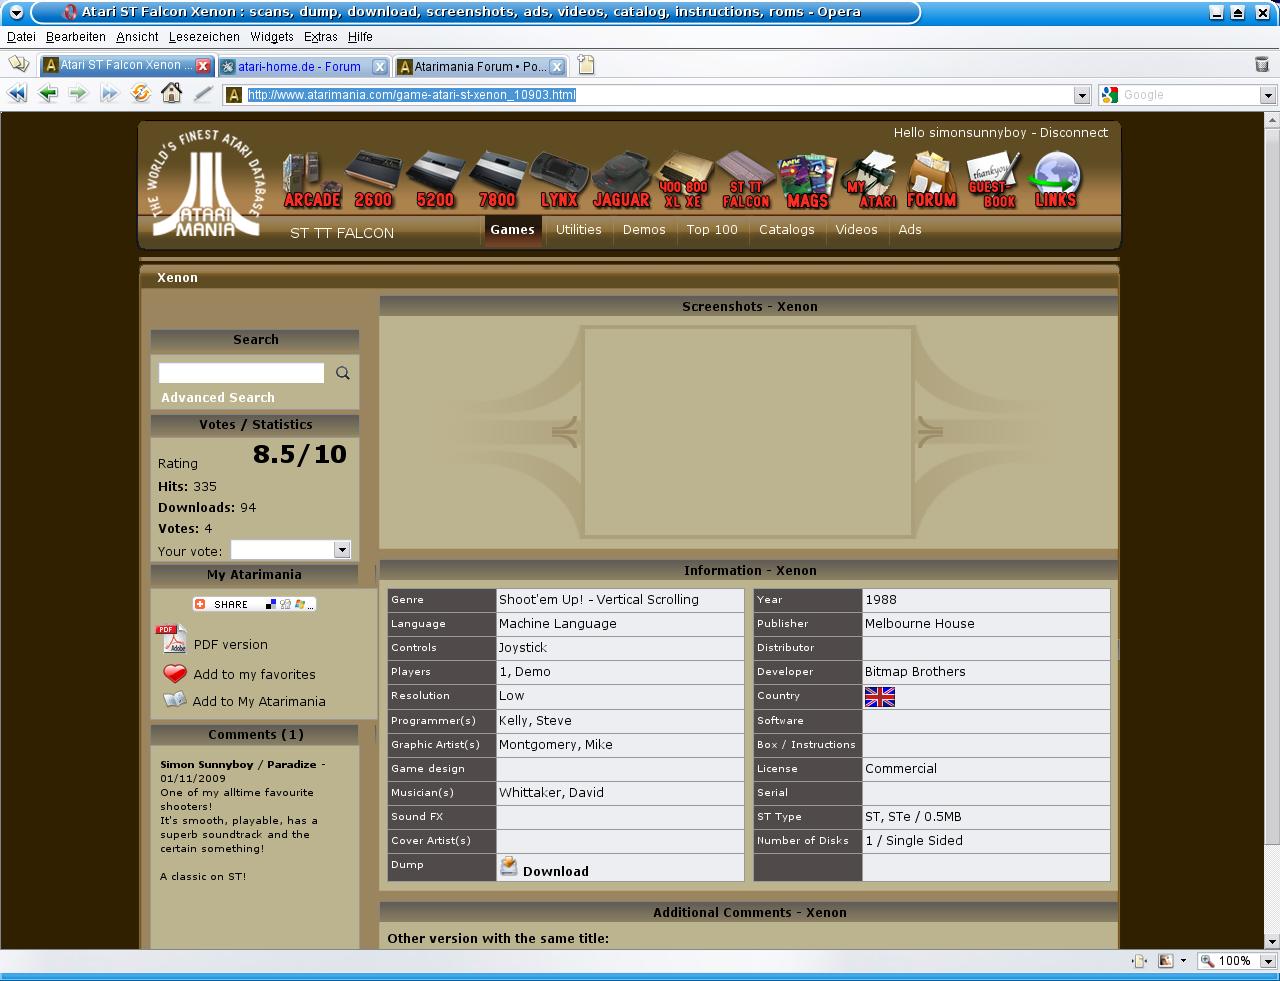 Atarimania viewed with Opera, no screenshot visible